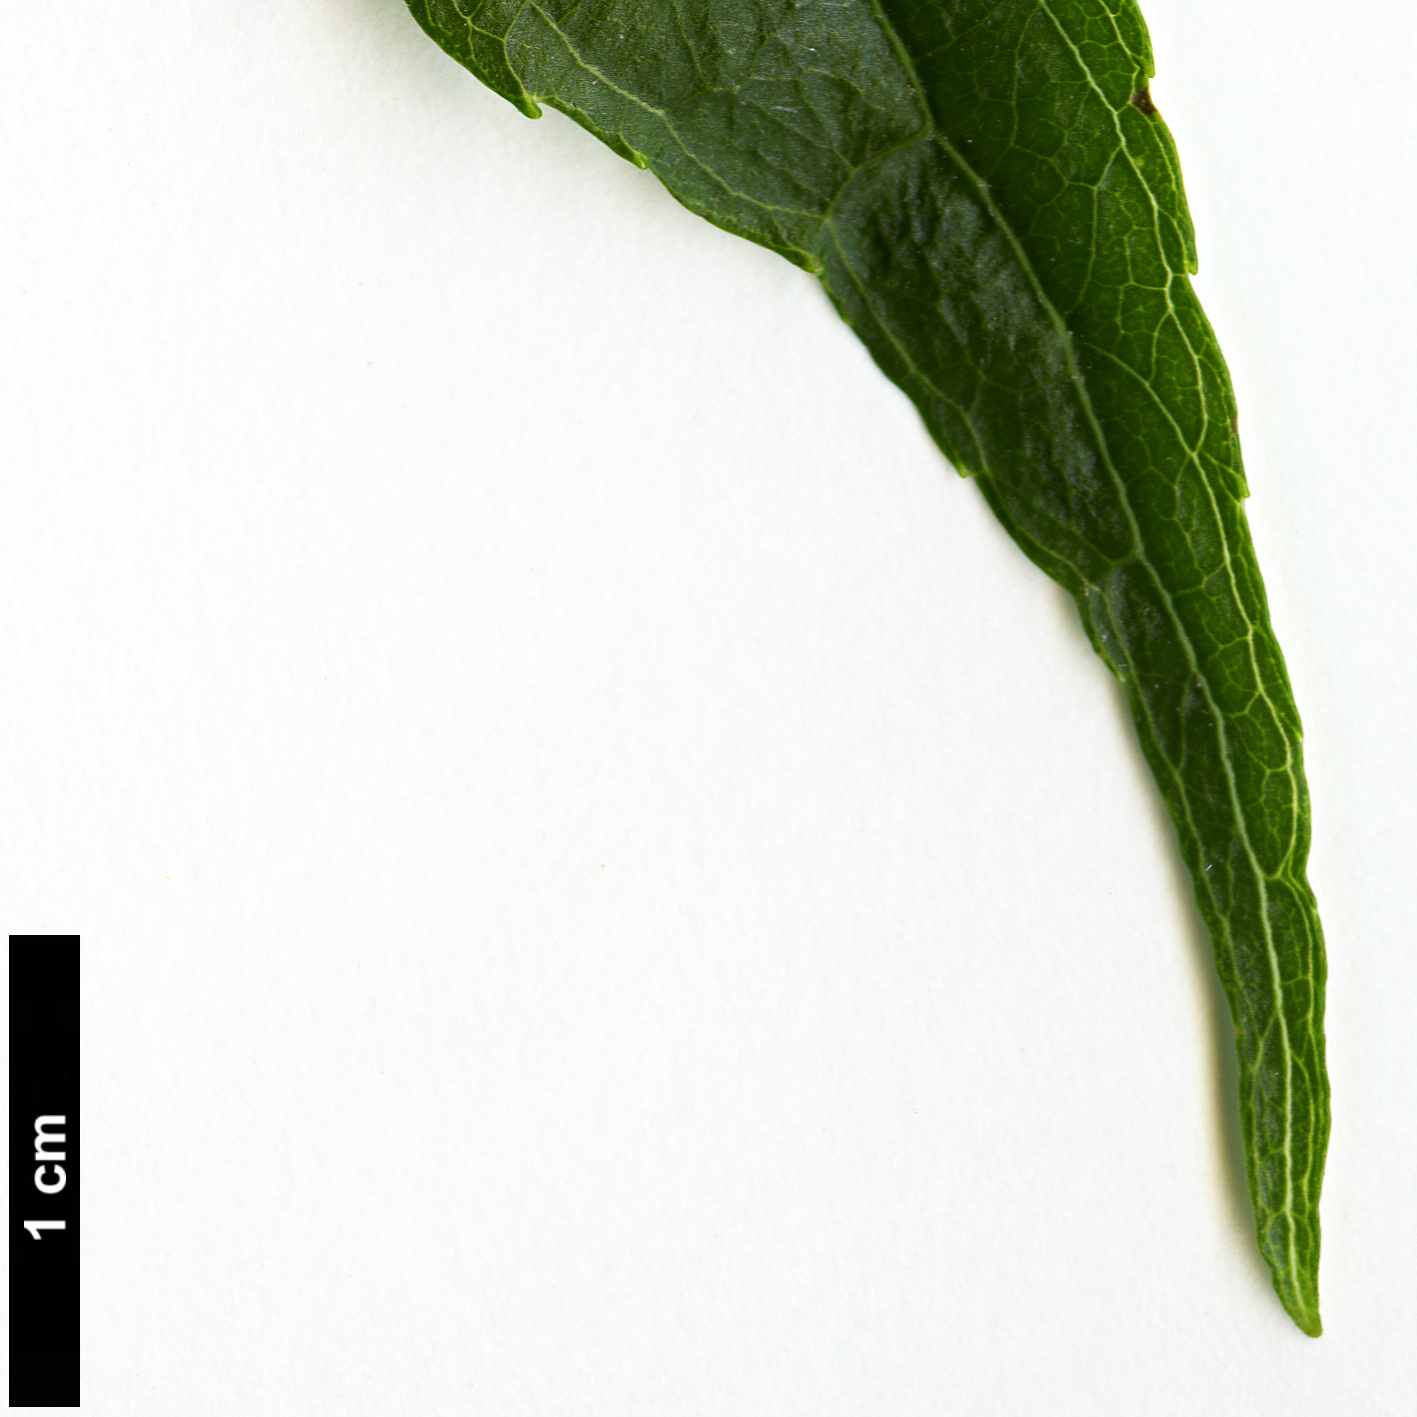 High resolution image: Family: Eucommiaceae - Genus: Eucommia - Taxon: ulmoides